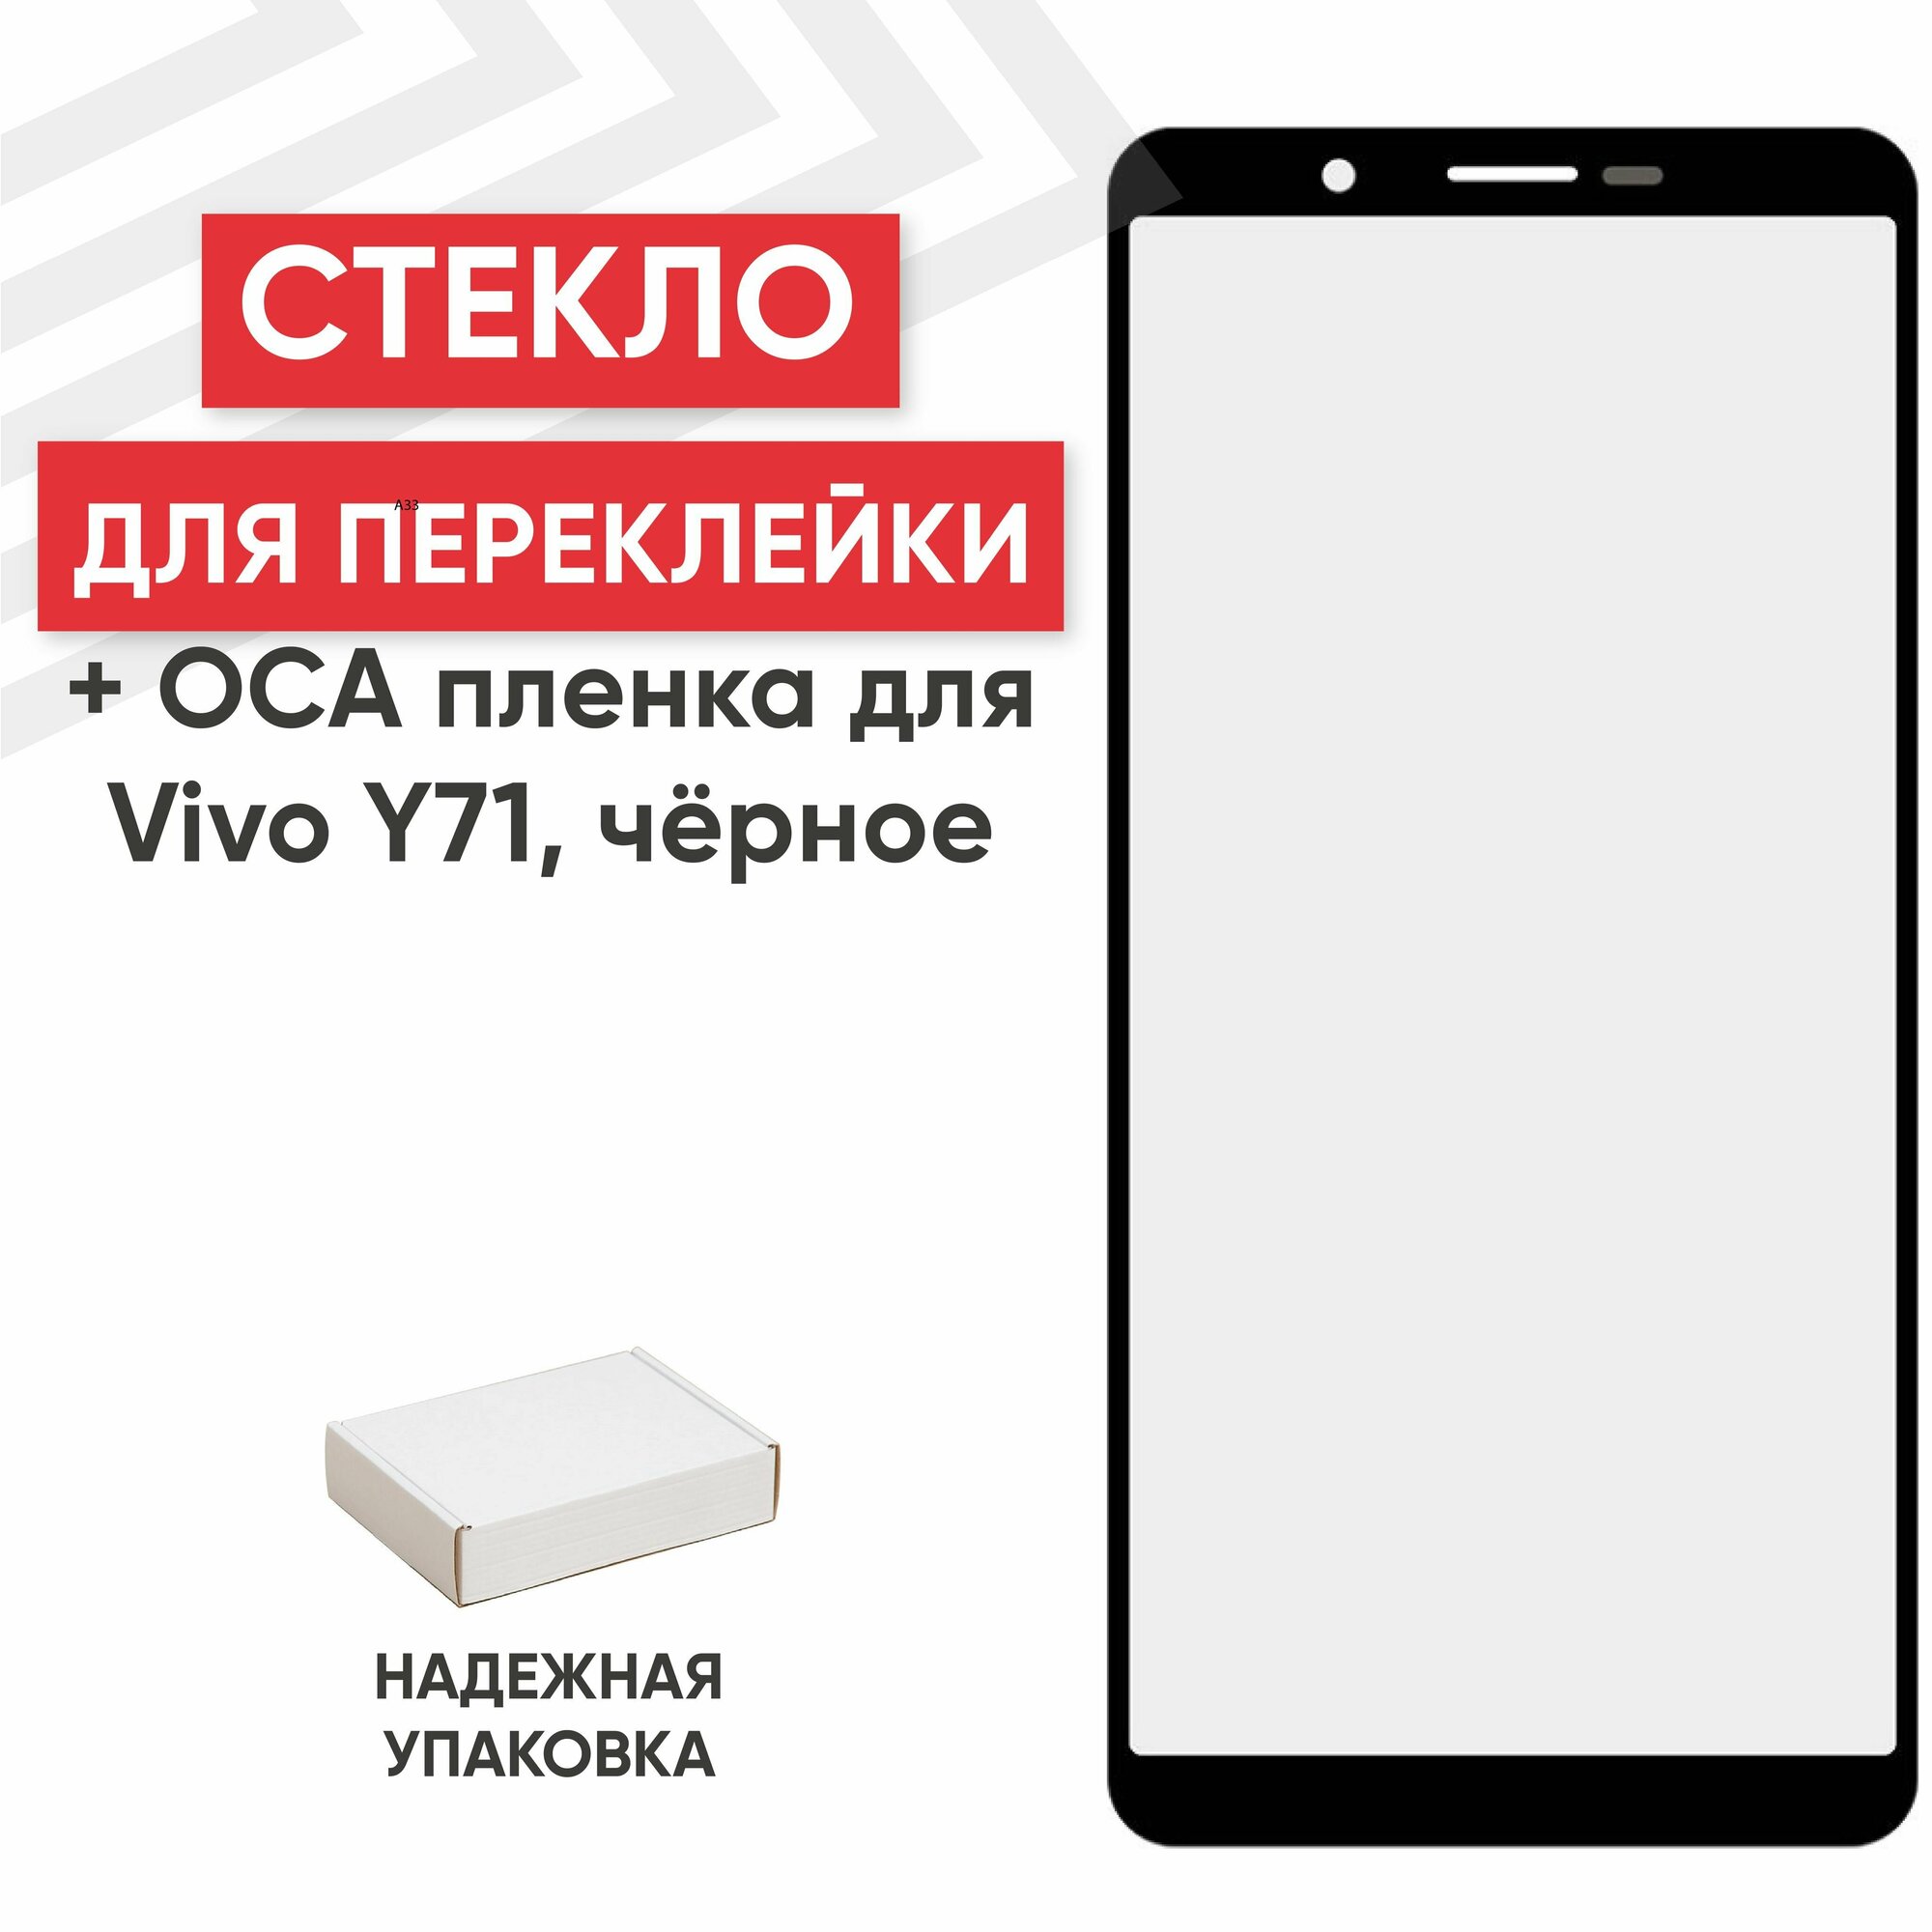 Стекло переклейки дисплея c OCA пленкой для мобильного телефона (смартфона) Vivo Y71, черное